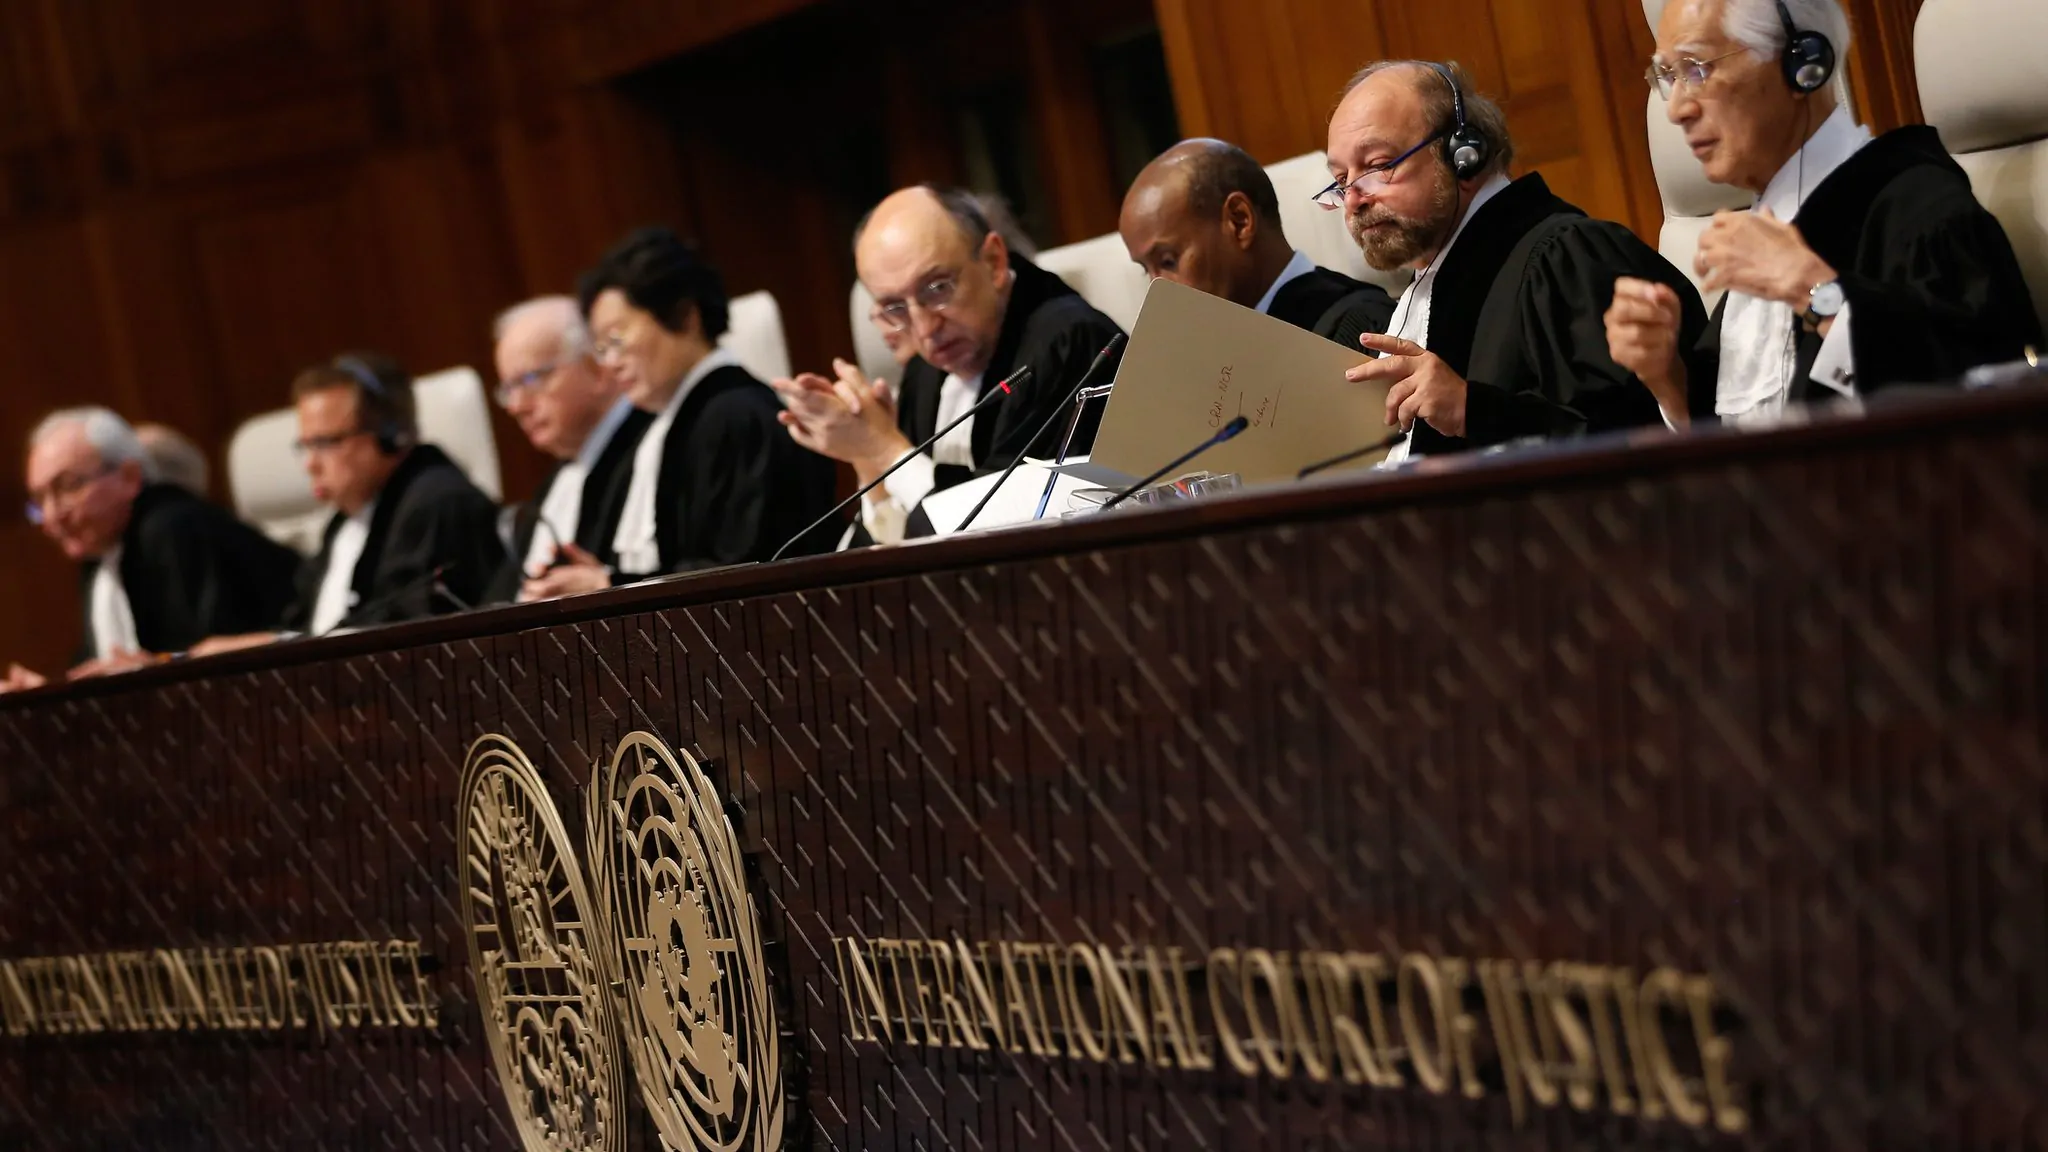 Деятельность международного суда